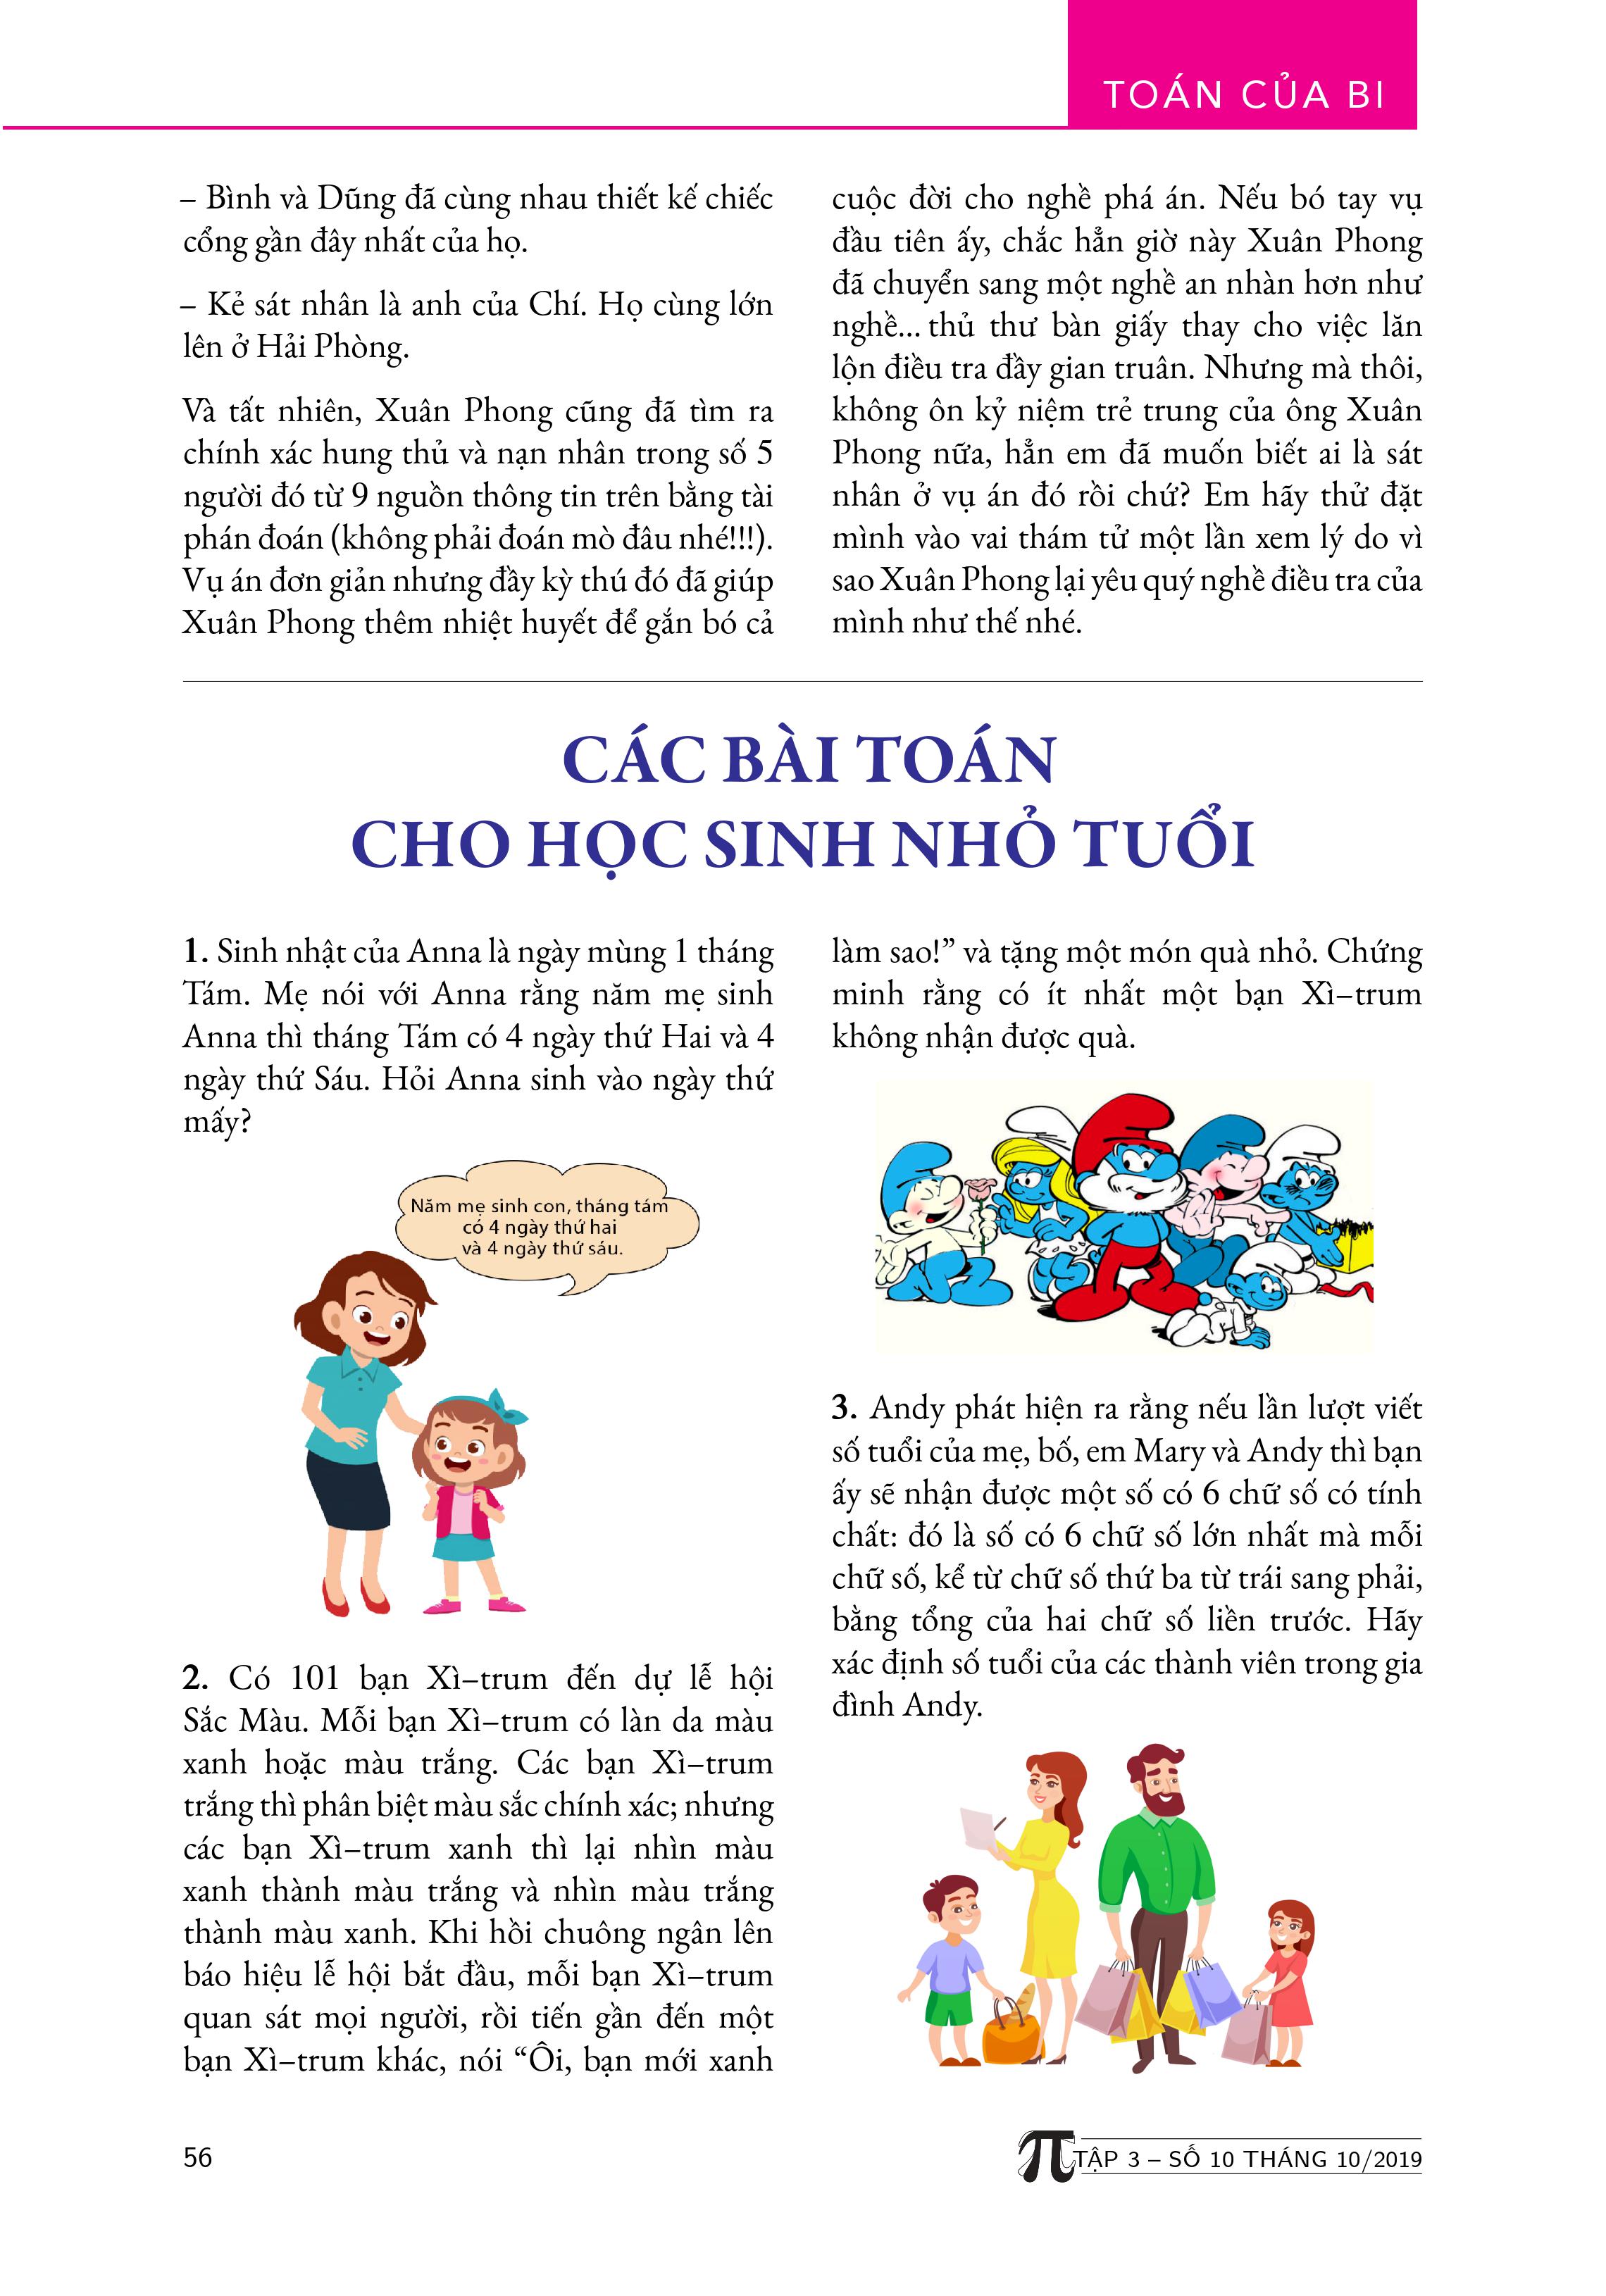 Tạp chí Pi- Hội Toán học Việt Nam số 10/ tháng 10 năm 2019